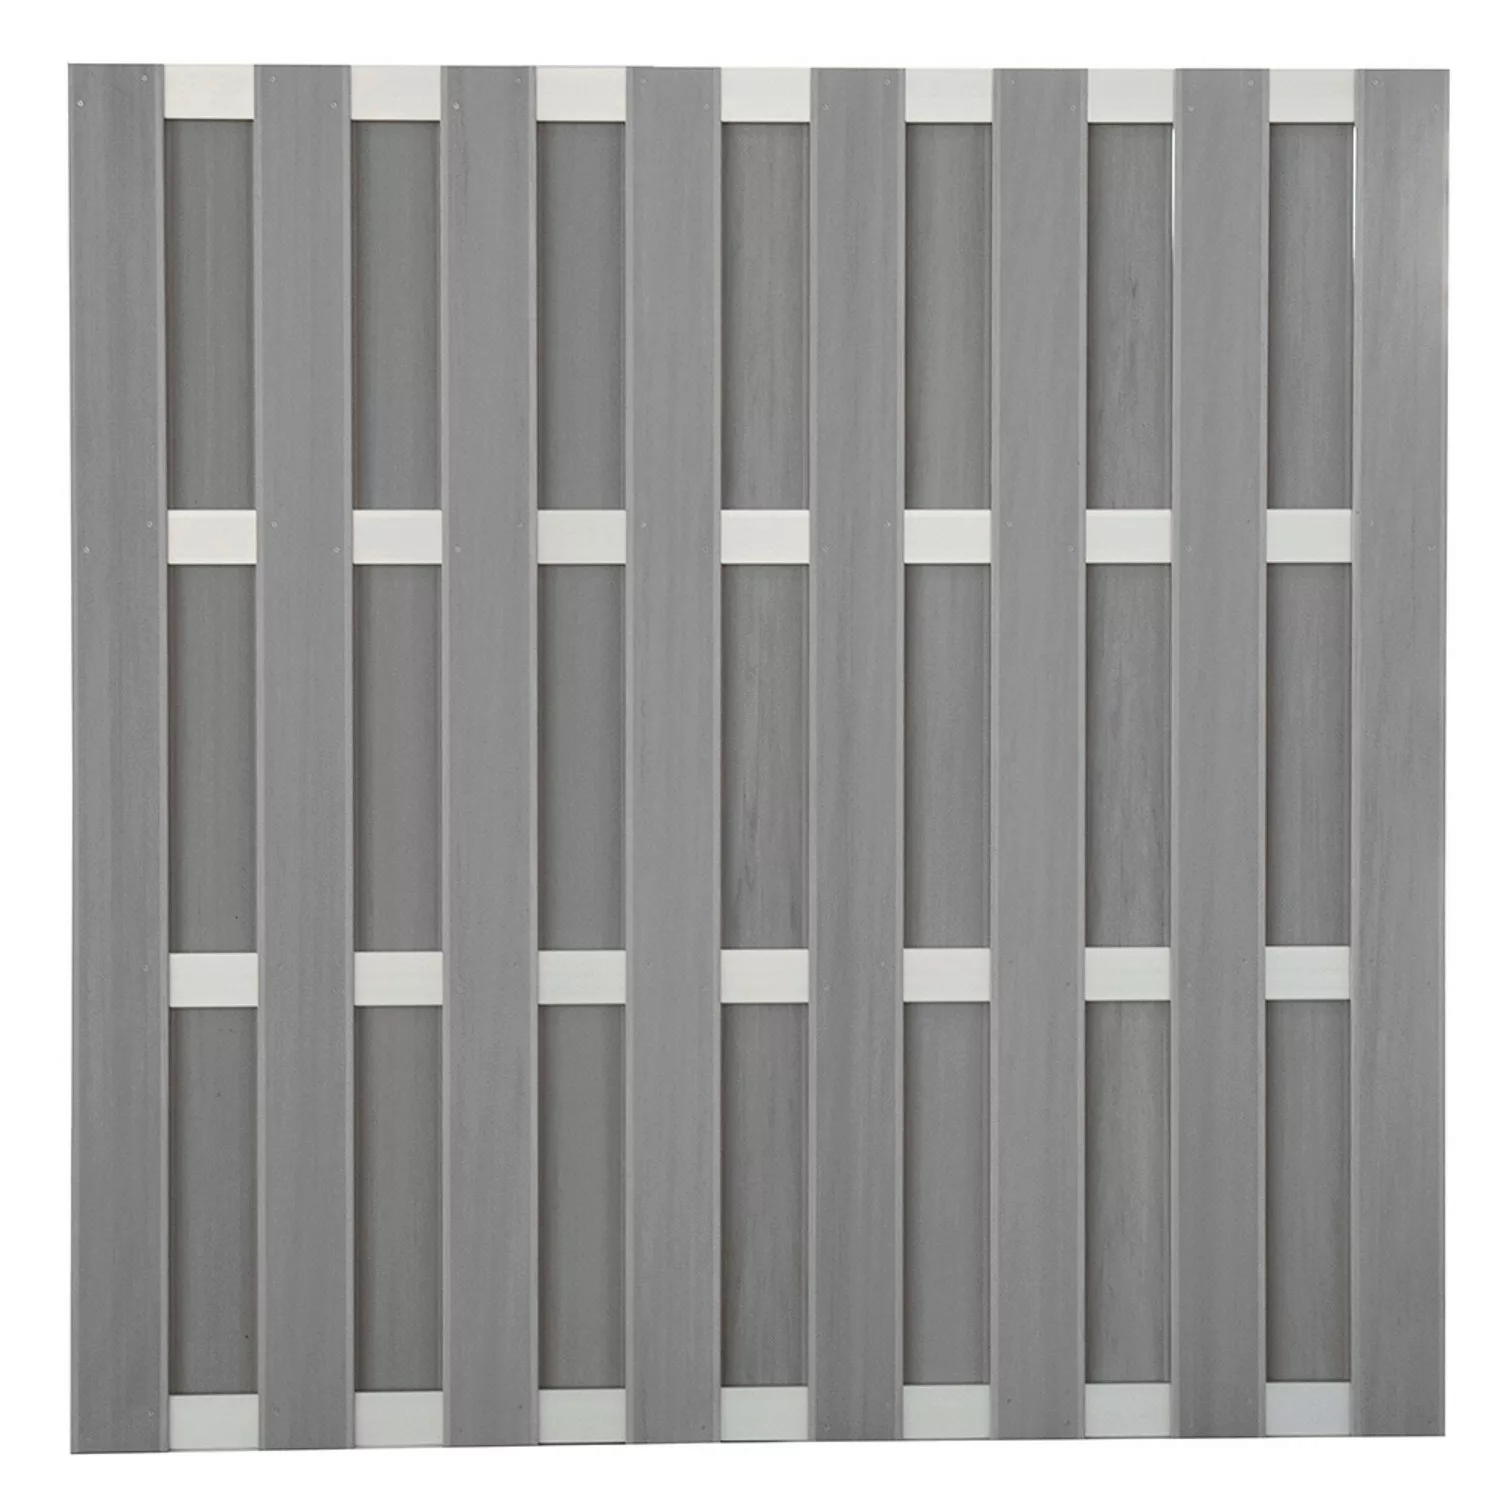 GroJa Fertigzaun Quadratisch Grau 180 cm x 180 cm günstig online kaufen